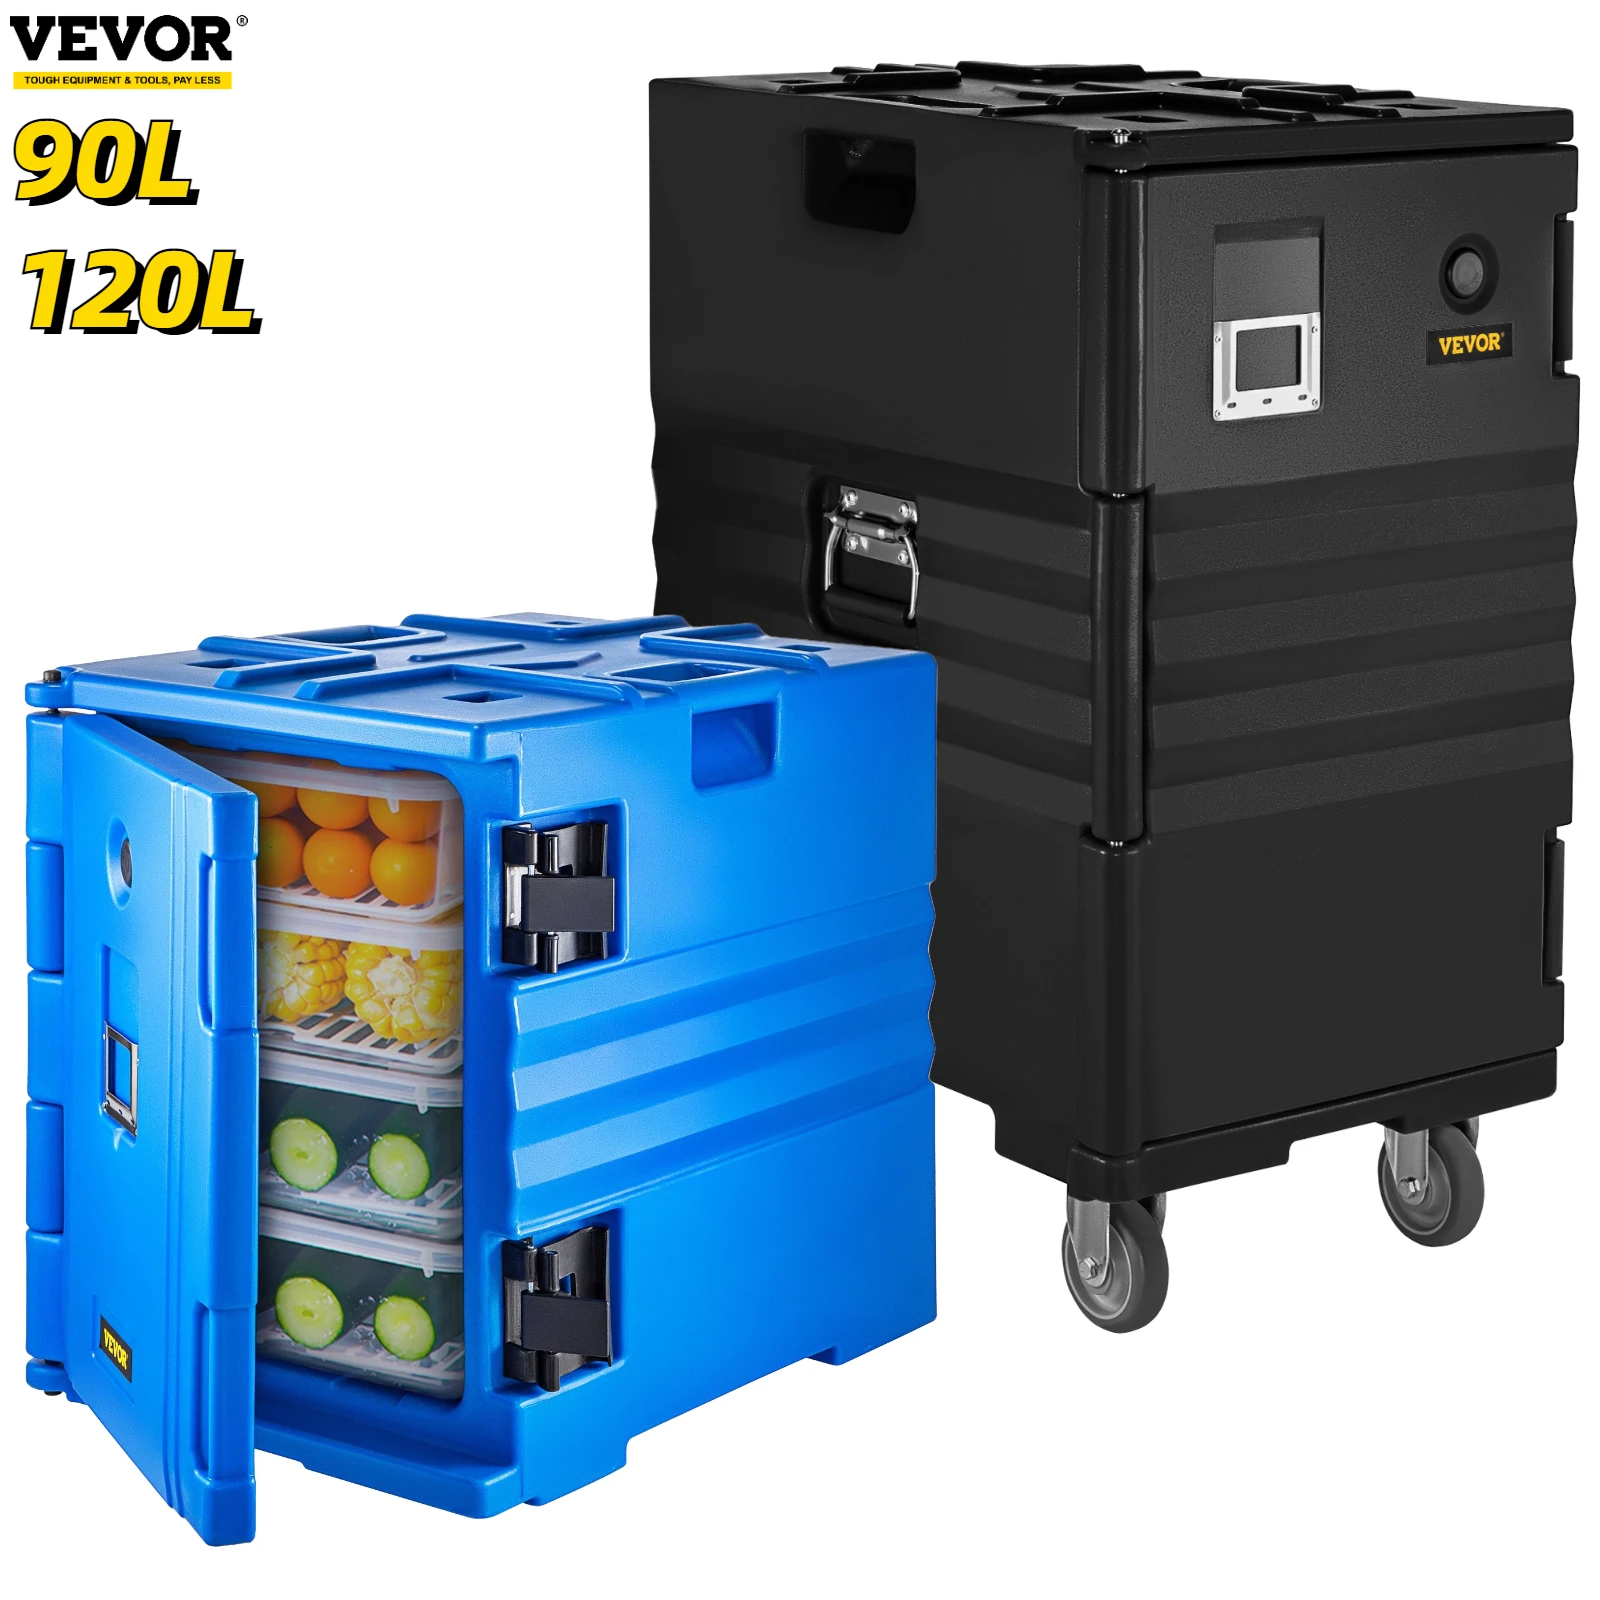 VEVOR 90L 120L изолированный контейнер для пищевых продуктов доставки на колесах с